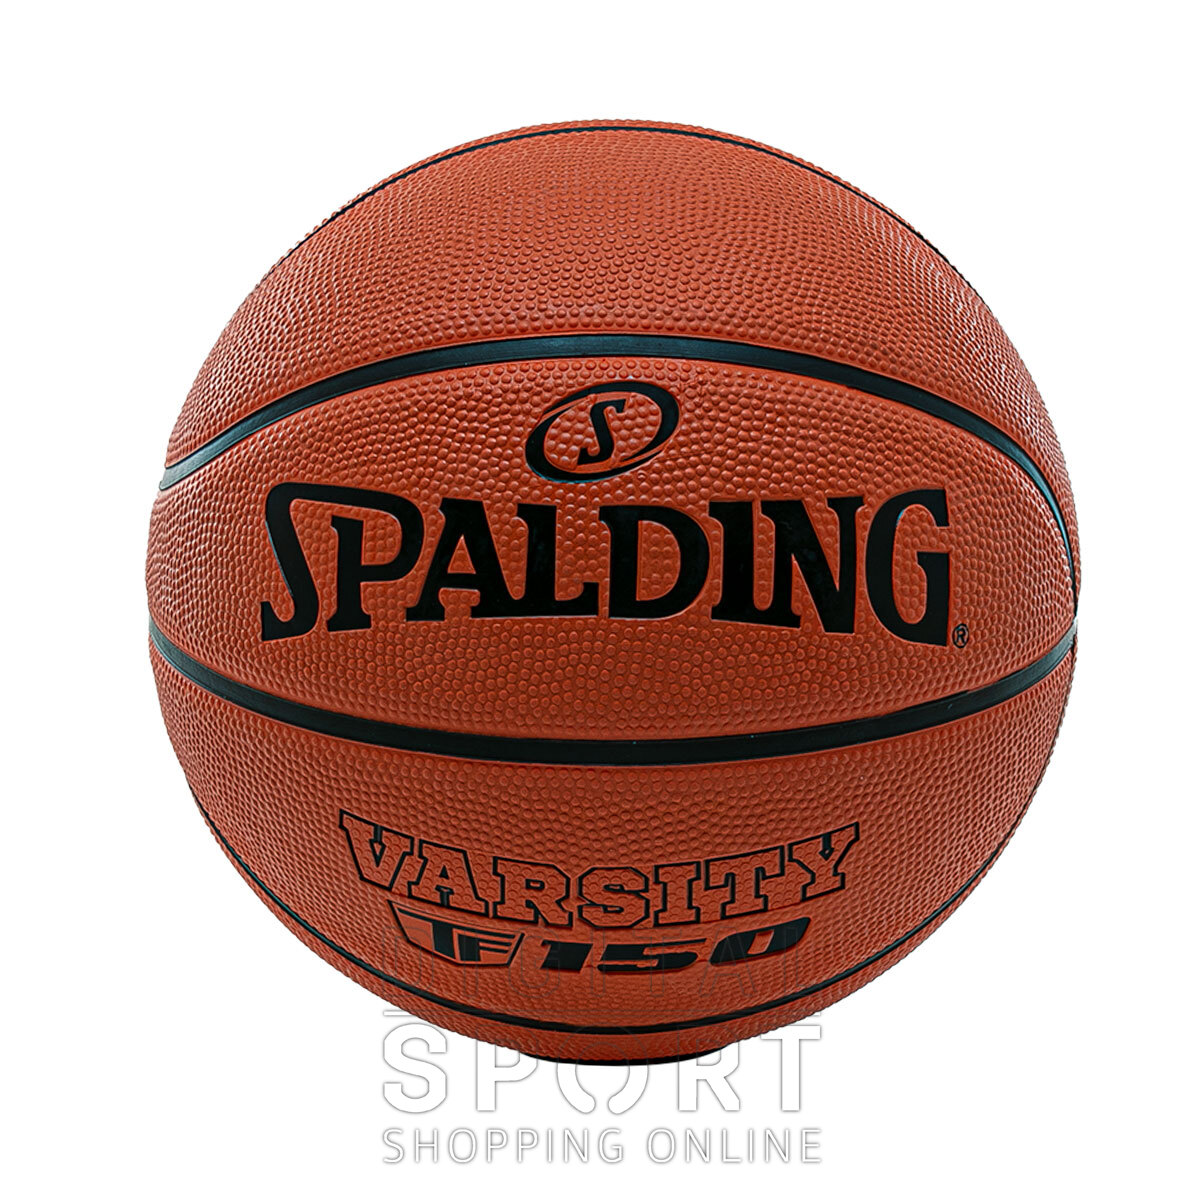 Bola de Basquete Spalding Varsity TF-150, Movento